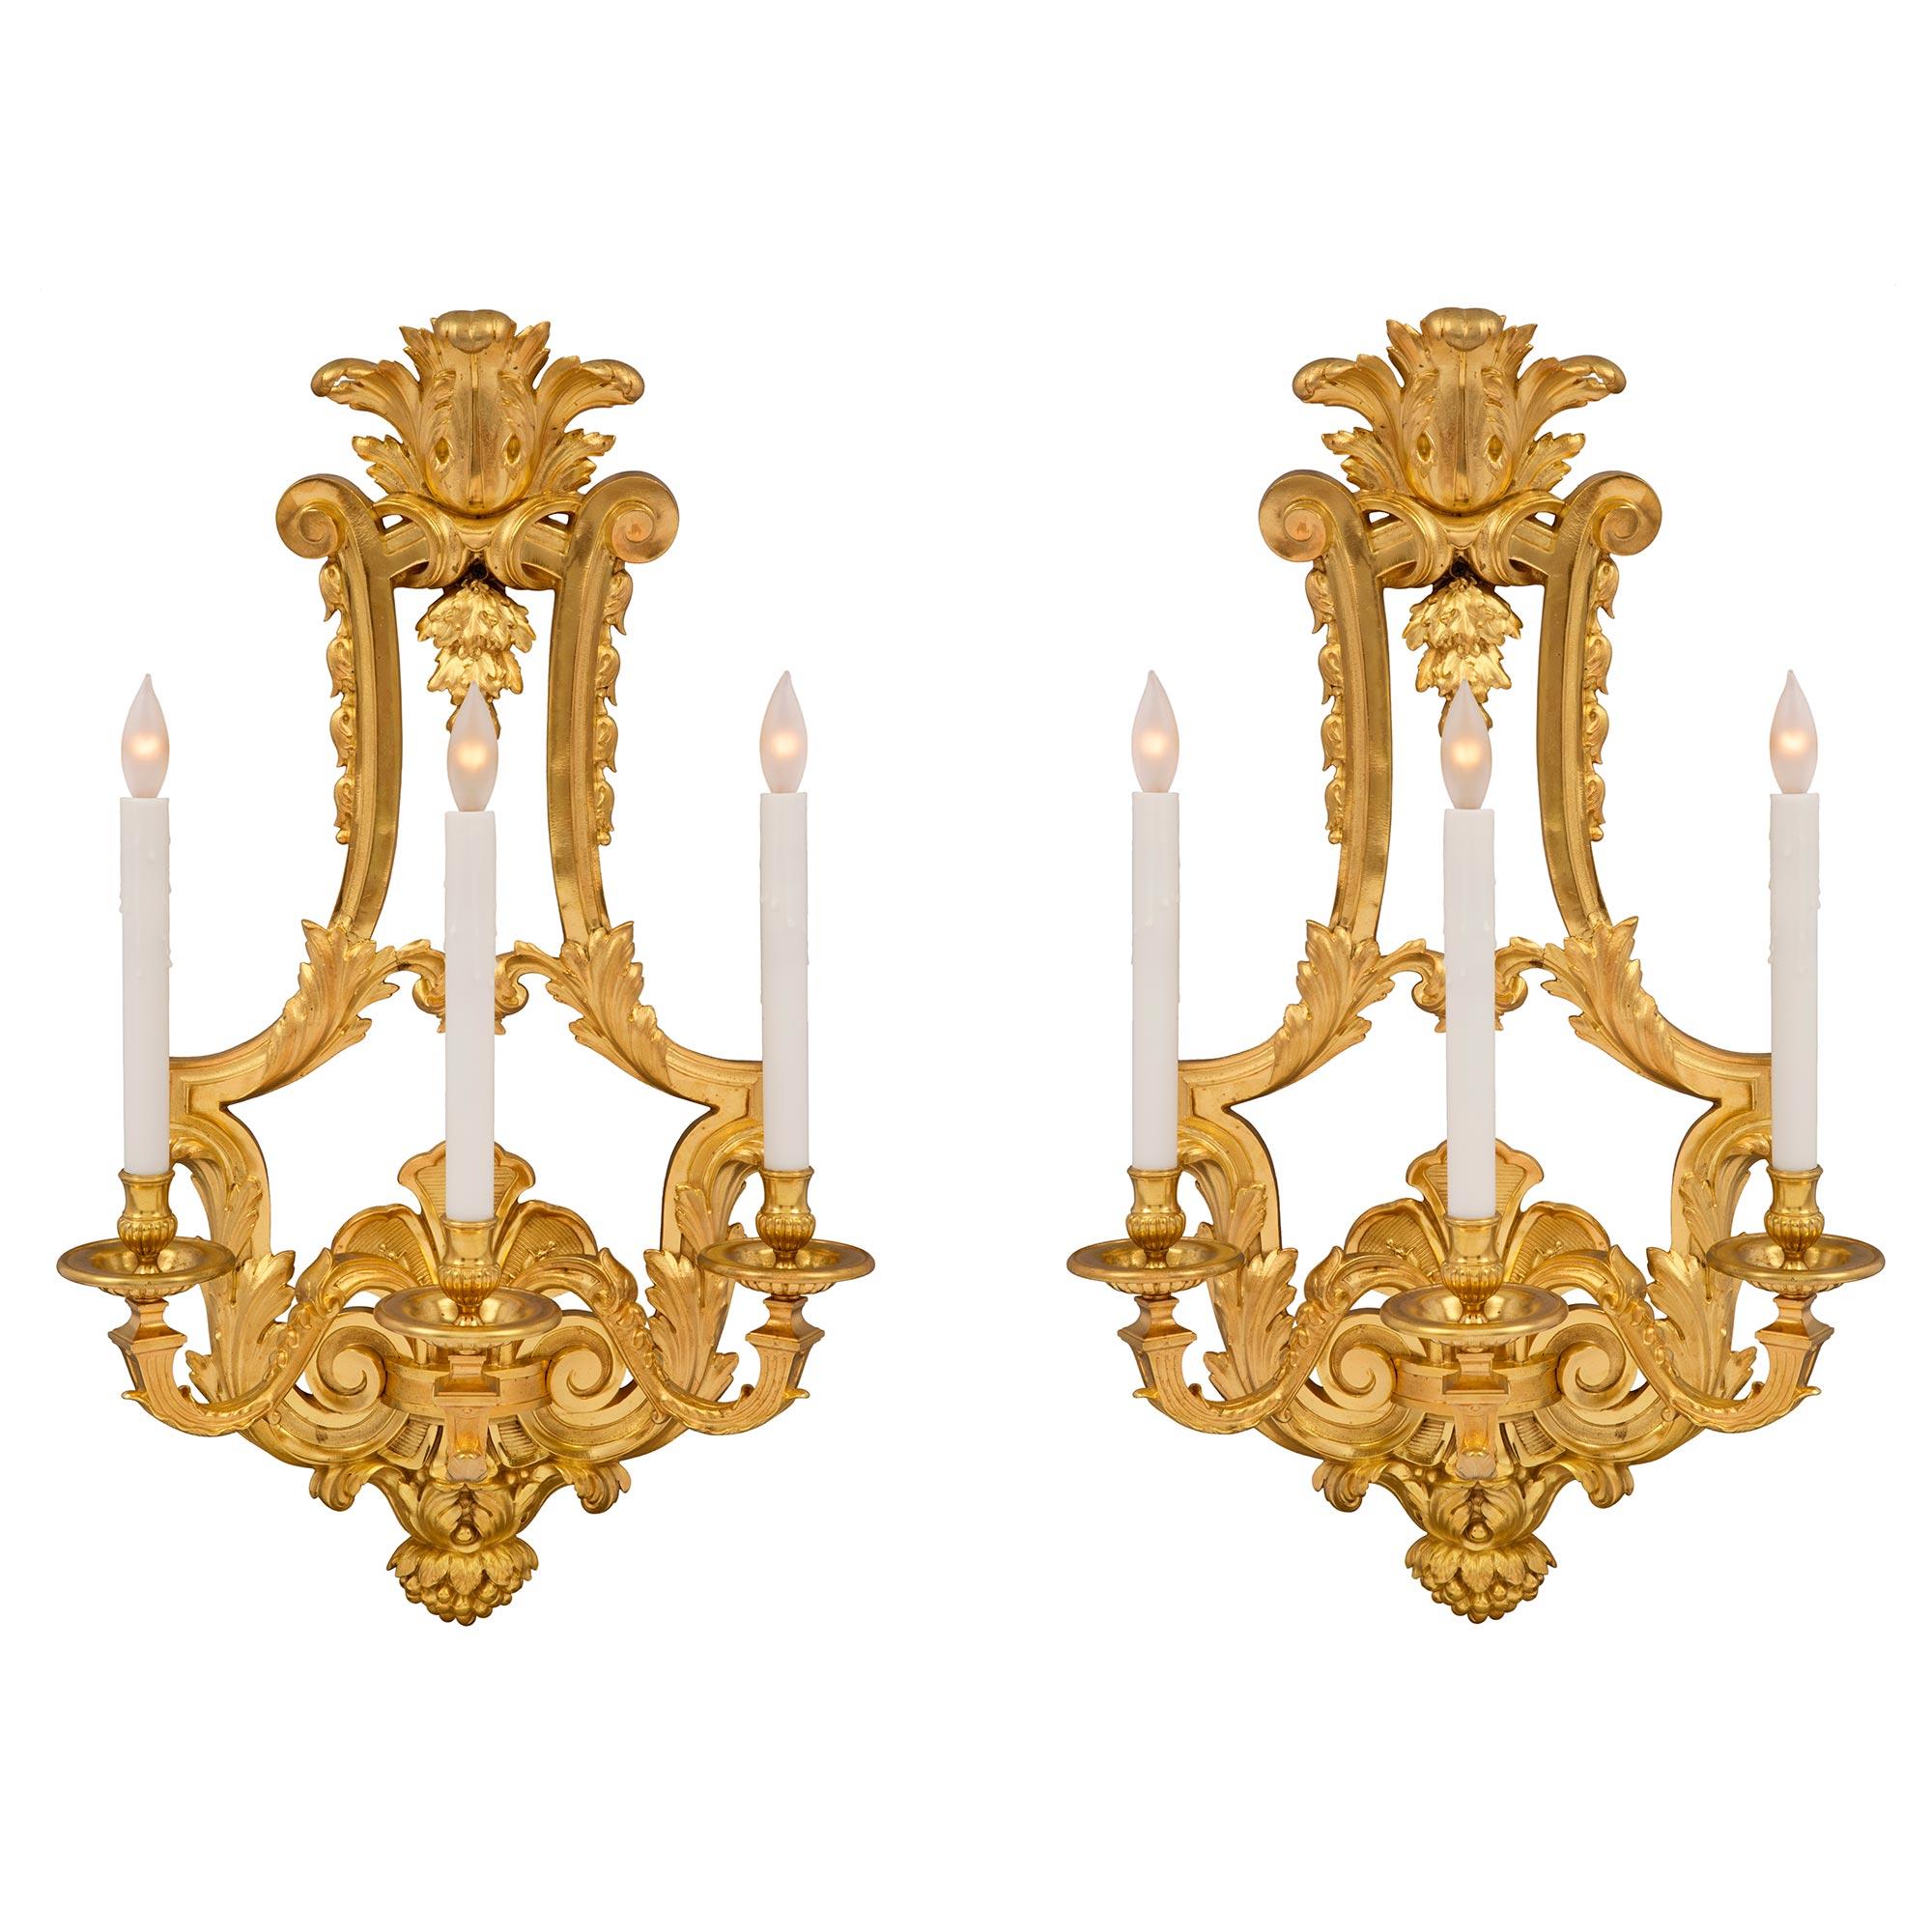 Ein auffälliges und hochwertiges Paar französischer dreiarmiger Ormolu-Leuchter aus dem 19. Jahrhundert im Stil Louis XVI. In der Mitte jeder Leuchte befindet sich ein beeindruckender, beerenförmiger Abschluss unter großen, reich ziselierten,